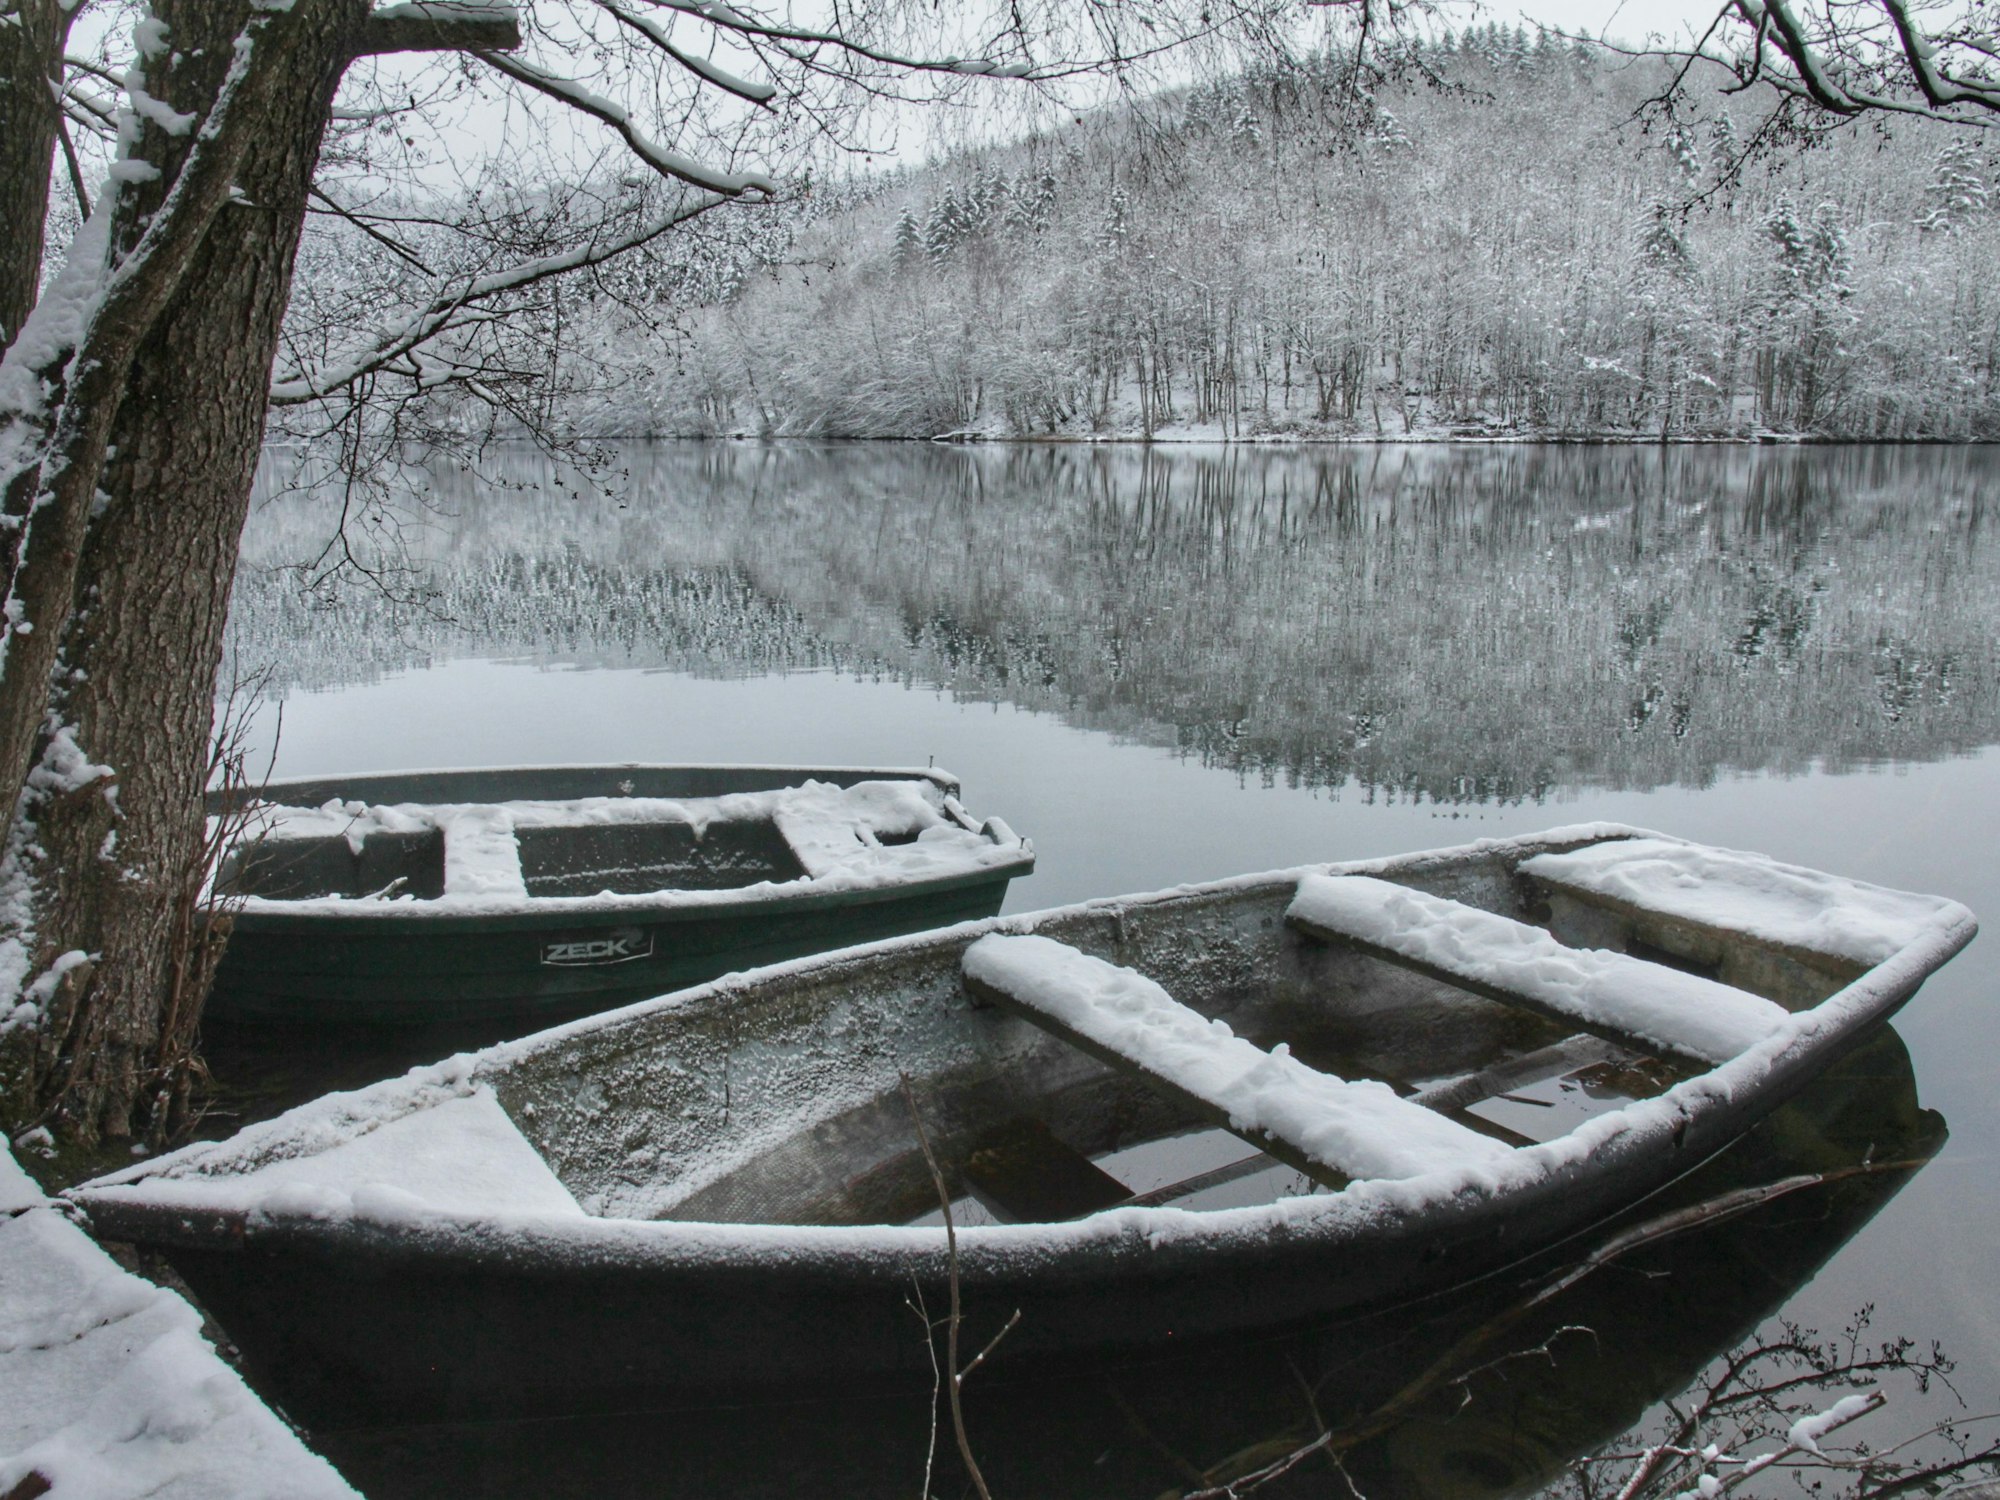 Im ruhigen Wasser des Freilinger Sees spiegelt sich die winterlich verschneite Landschaft. Im Vordergrund sind zwei Ruderboote, auf denen ebenfalls Schnee liegt.